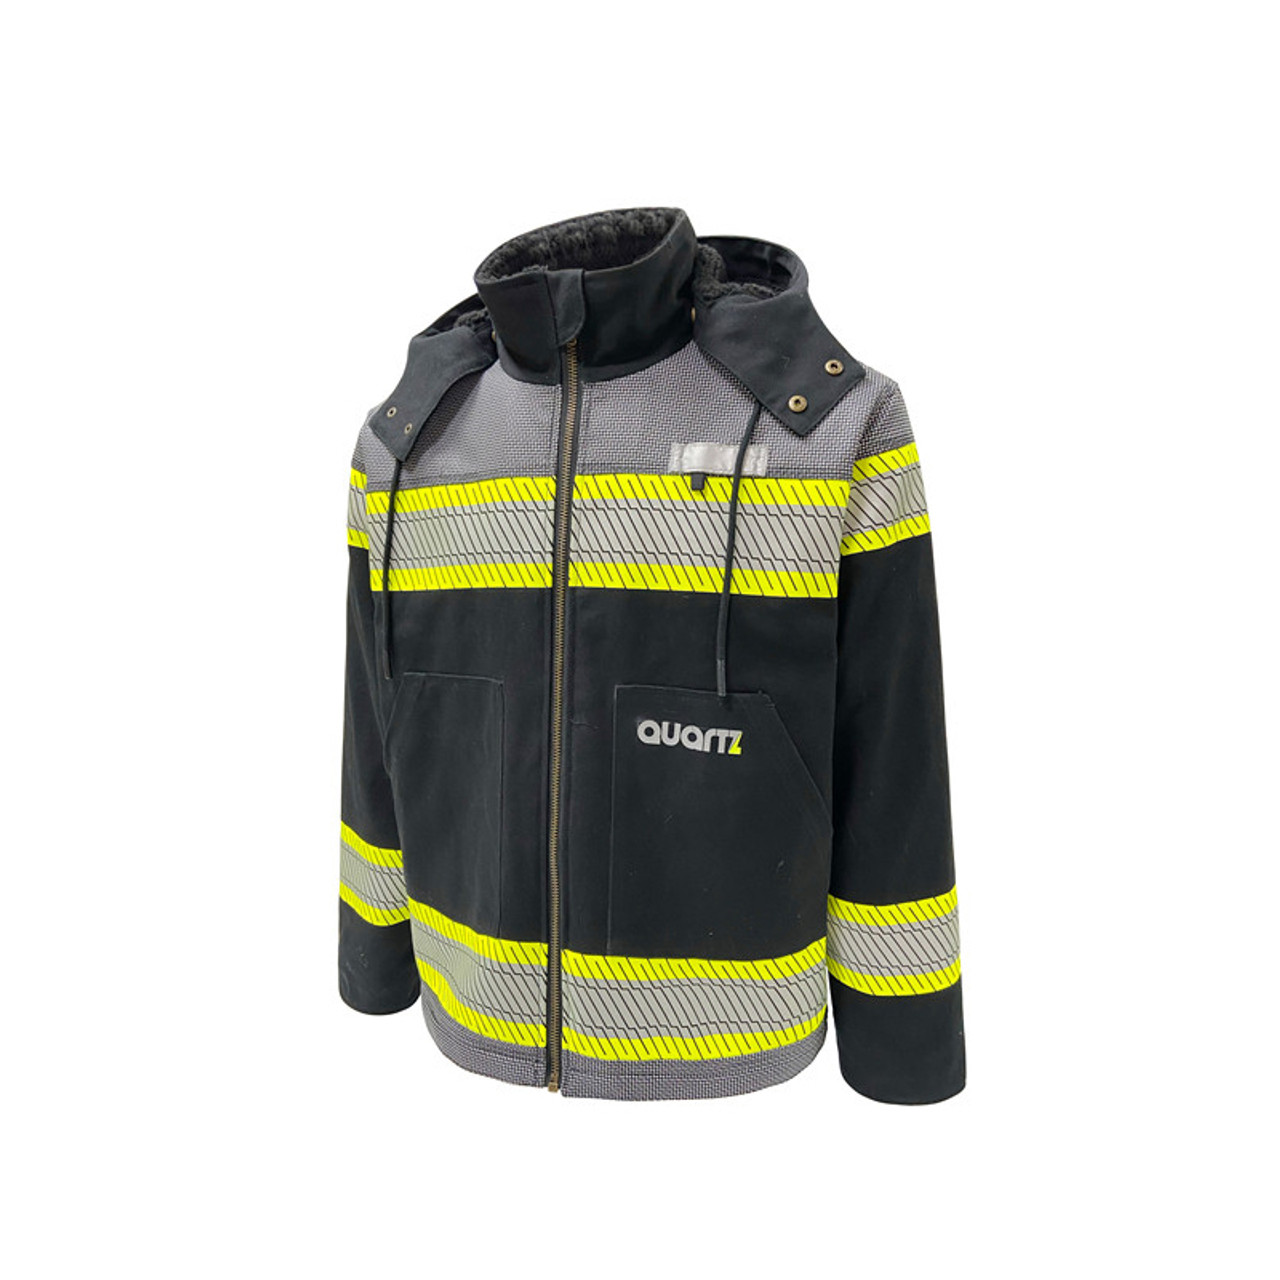 Asio Gear, LLC Windproof Sherpa-Lined Jacket